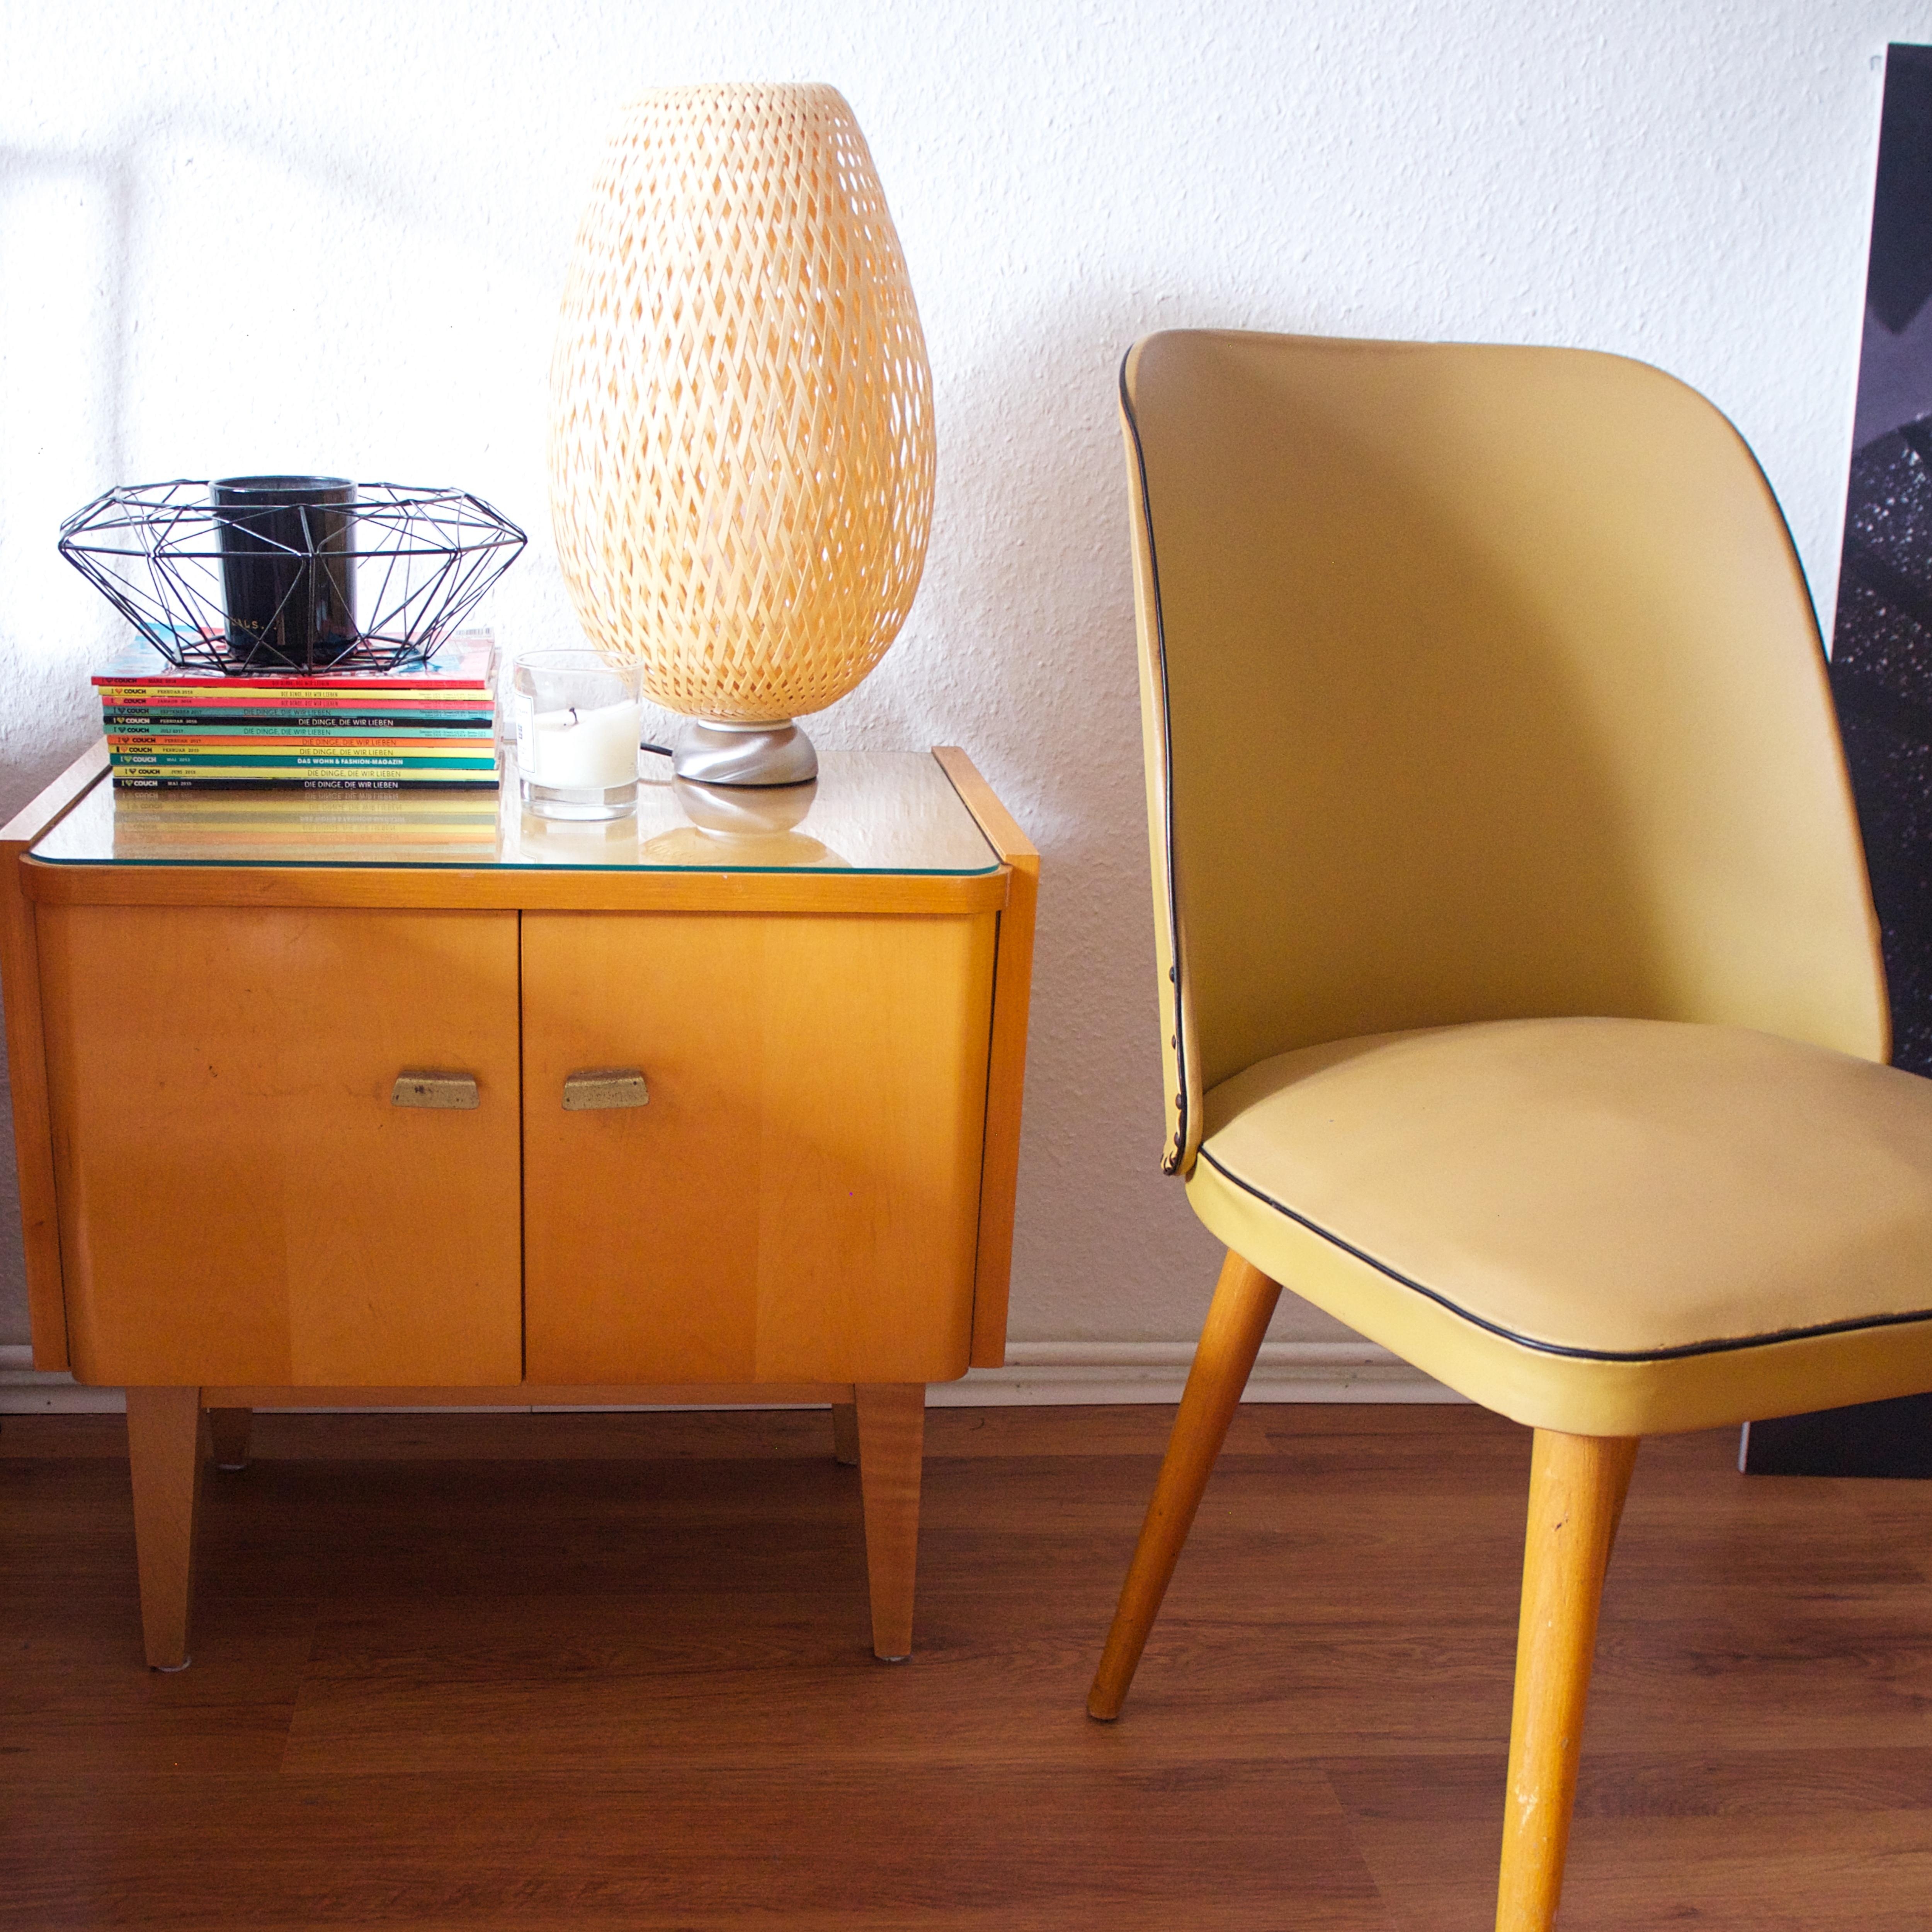 Der gelbe Stuhl - Im Sommer eingezogen und versteht sich seitdem prächtig mit dem kleinen Schränkchen. Ein Erbstück. 
